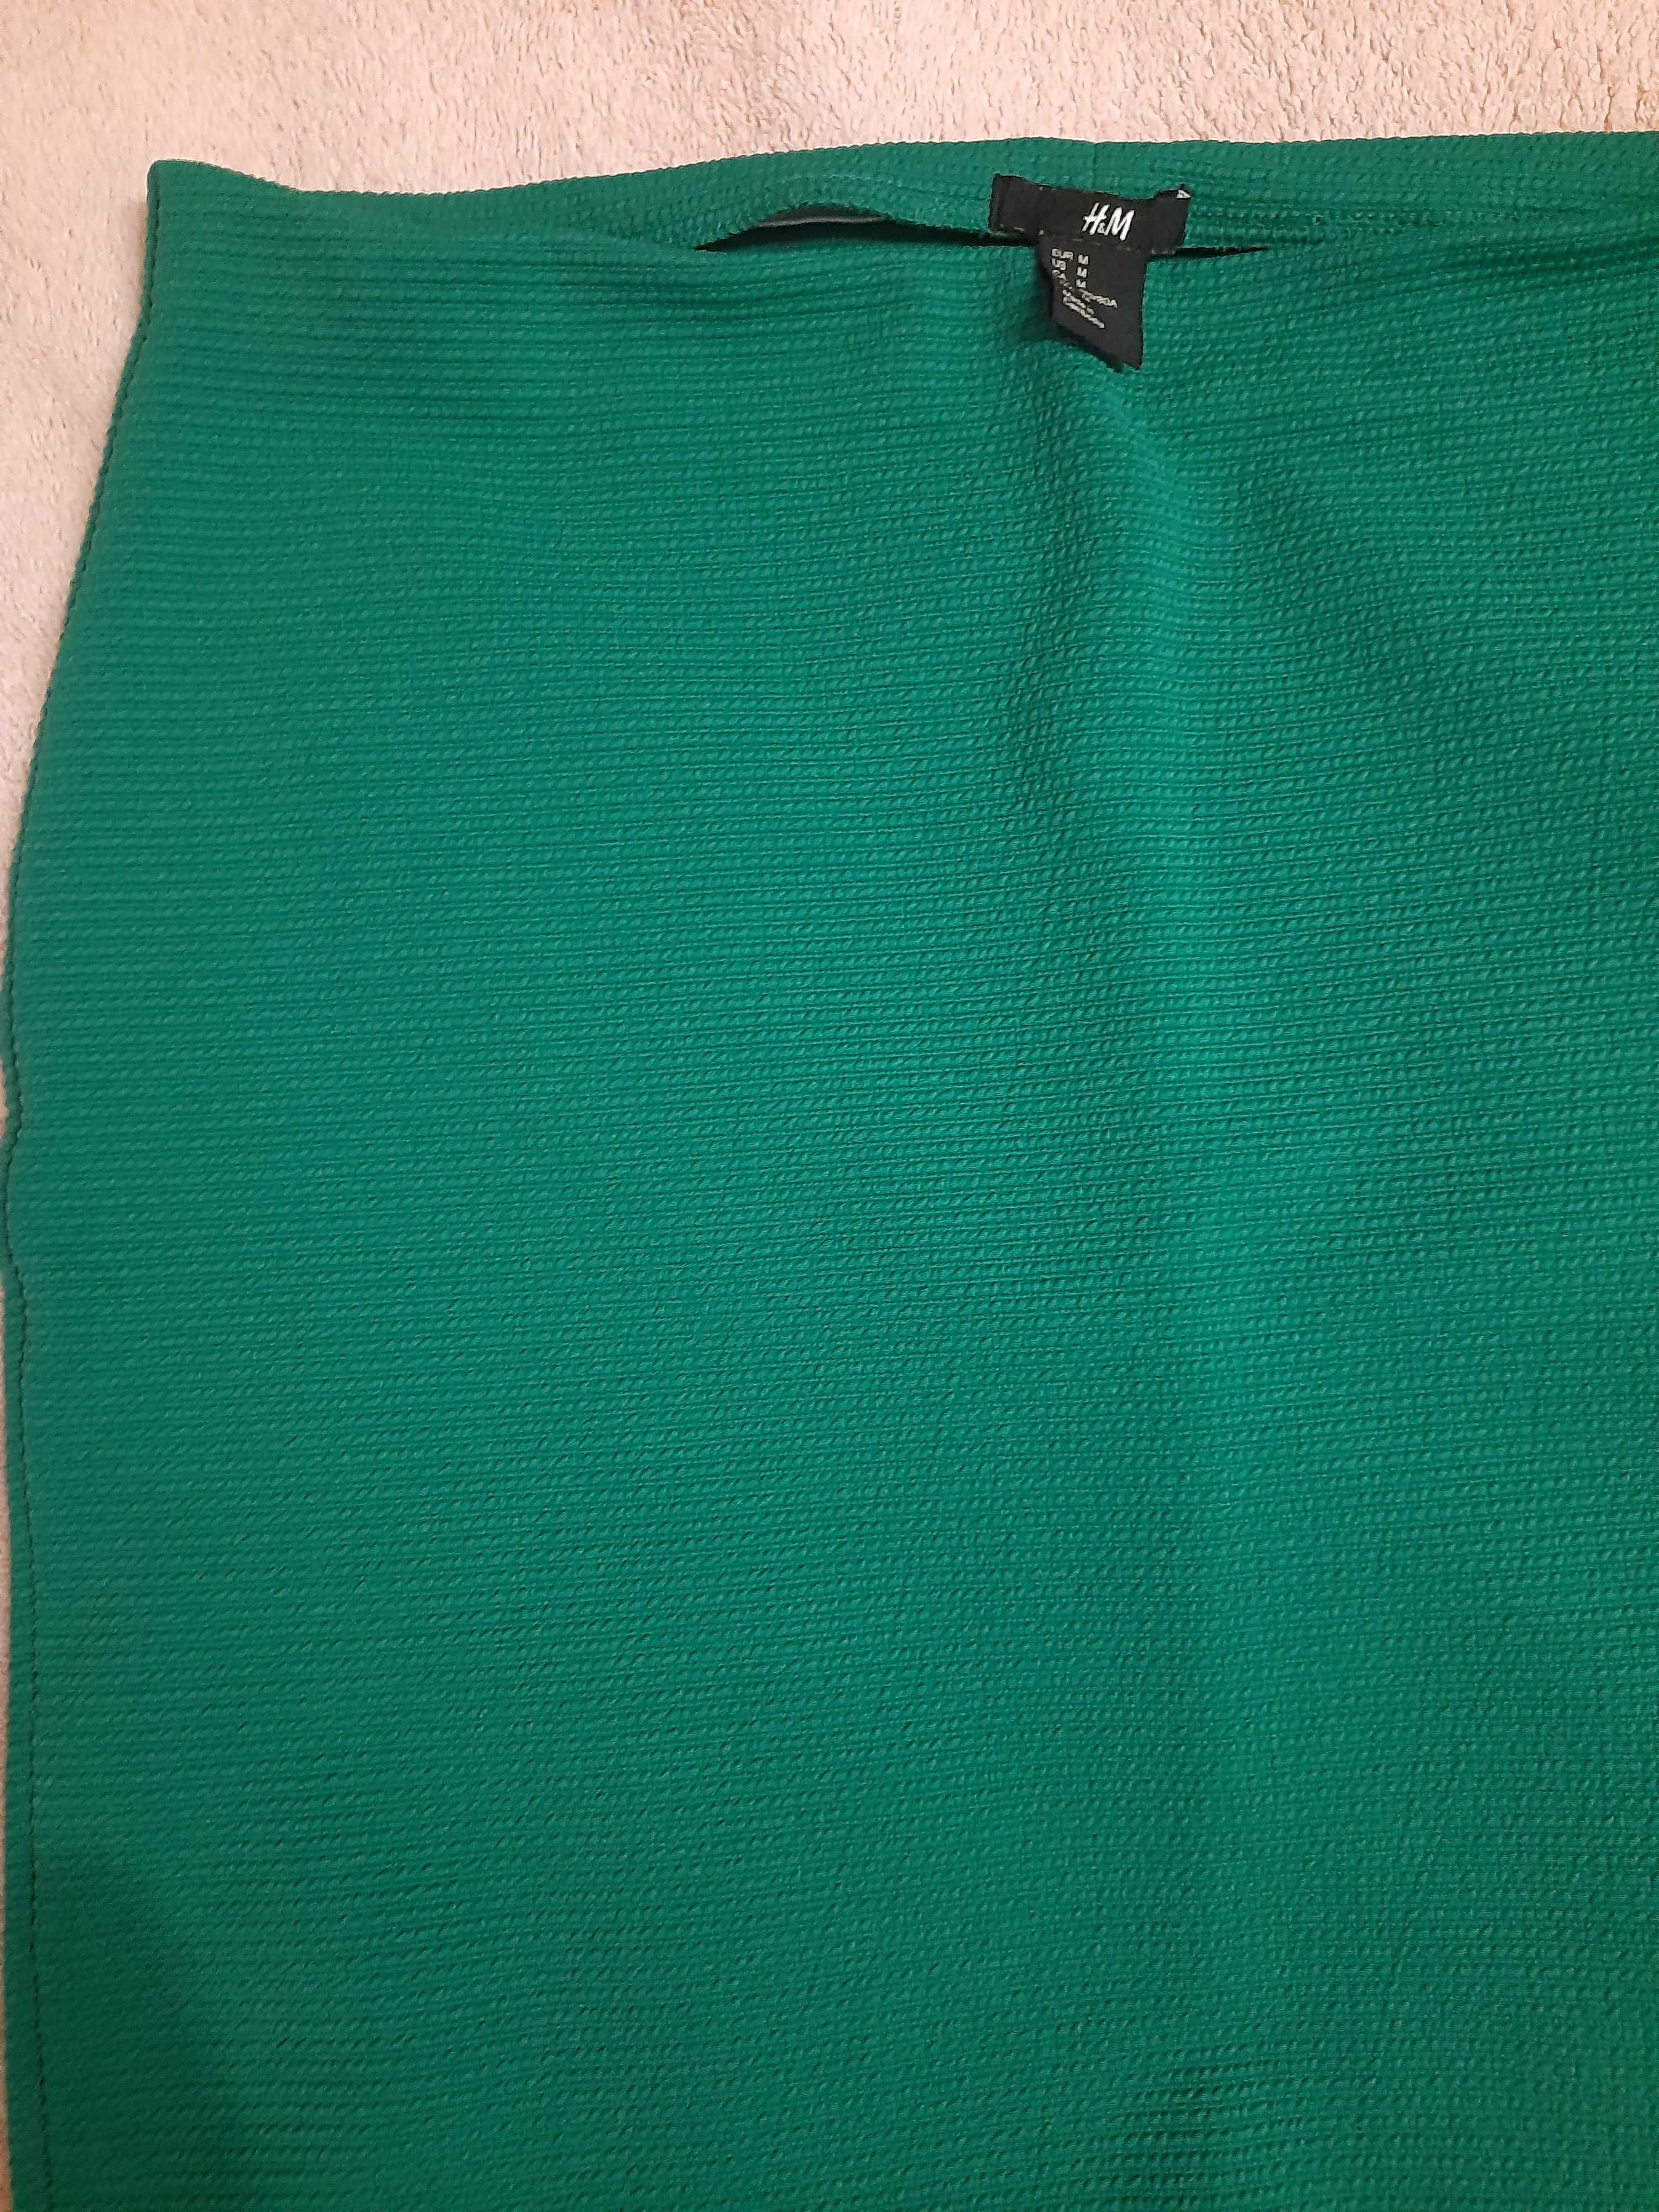 Spódnica zielona   firmy H&M